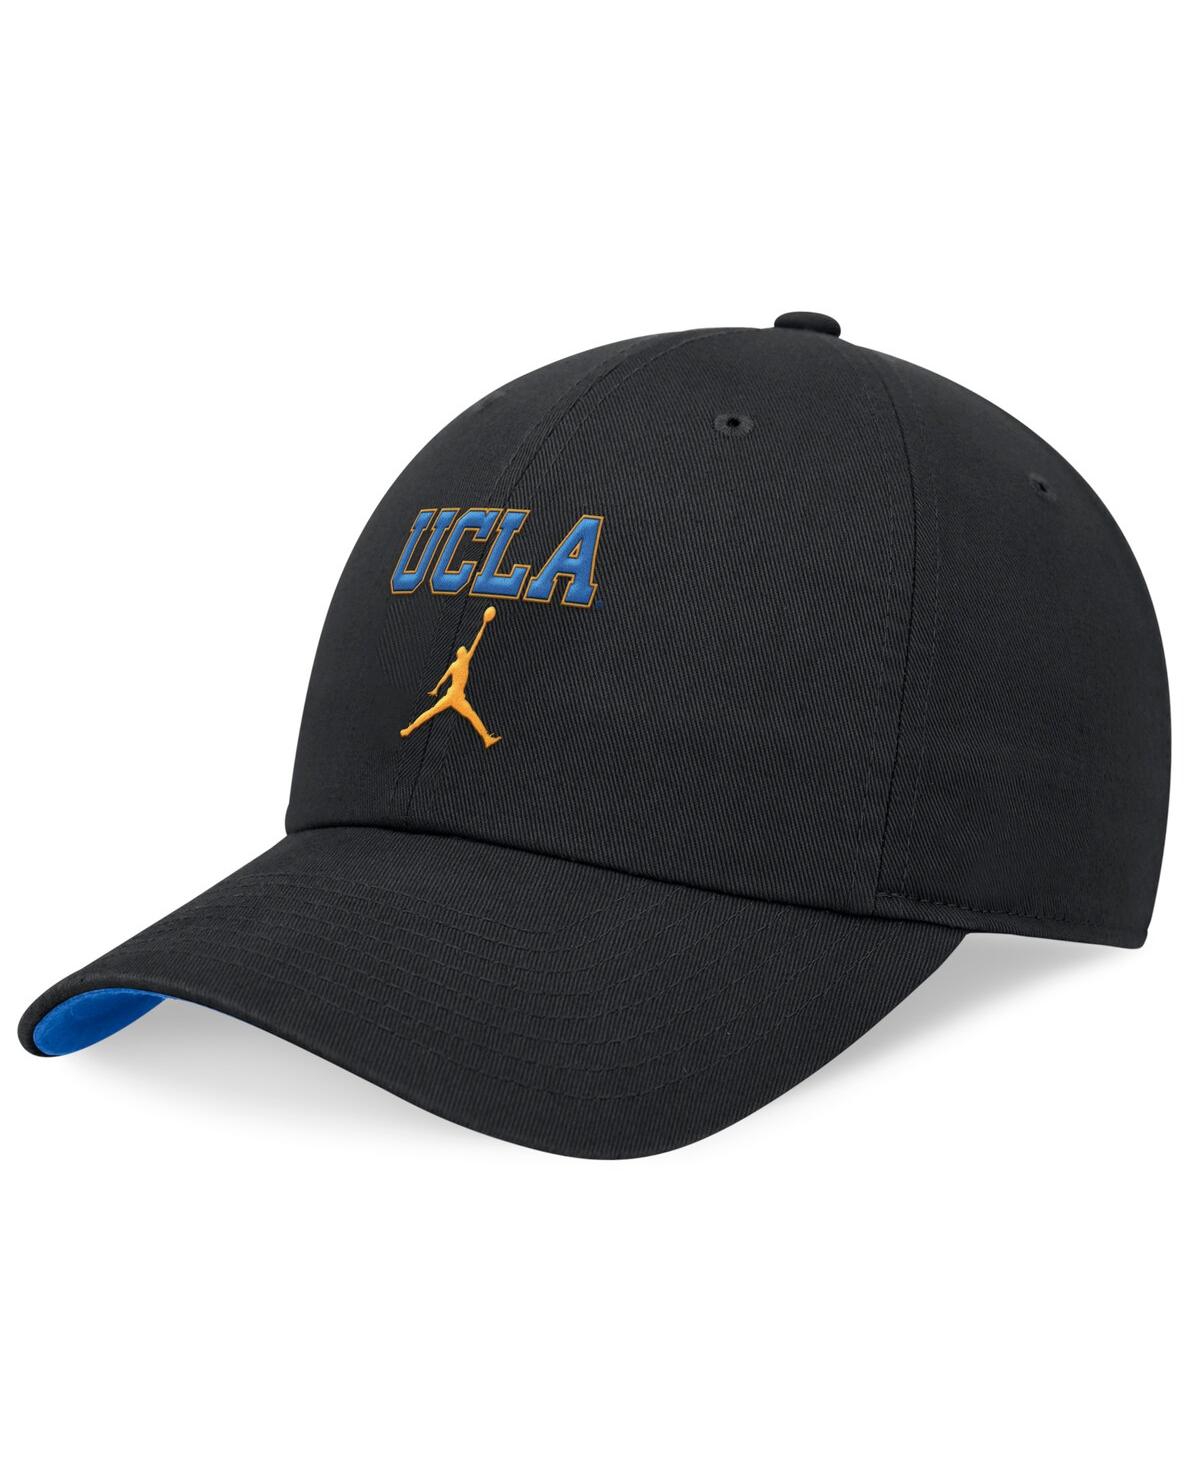 Men's and Women's Black Ucla Bruins 2024 Sideline Tri-Glide Adjustable Hat - Black